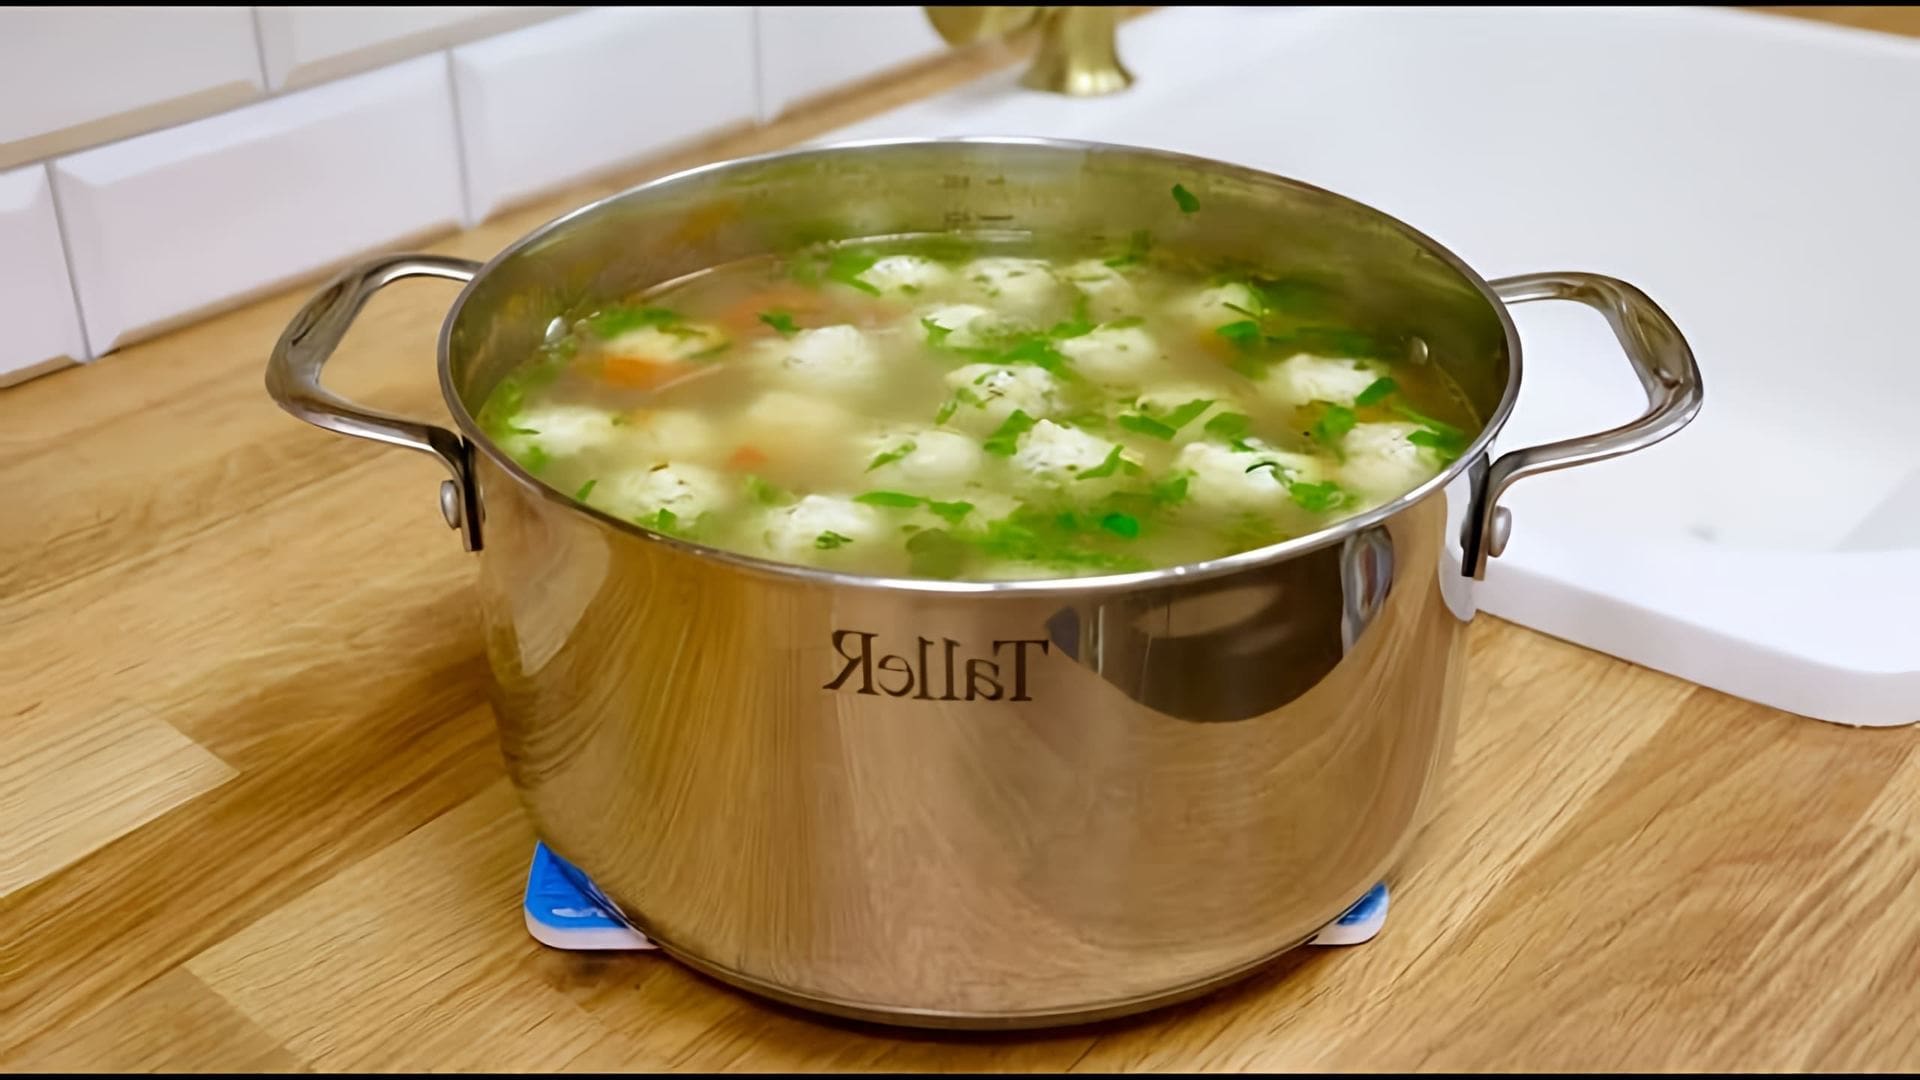 Мой фирменный суп с фрикадельками / Кололашки суп - это видео-ролик, в котором я покажу, как приготовить вкусный и ароматный суп с фрикадельками